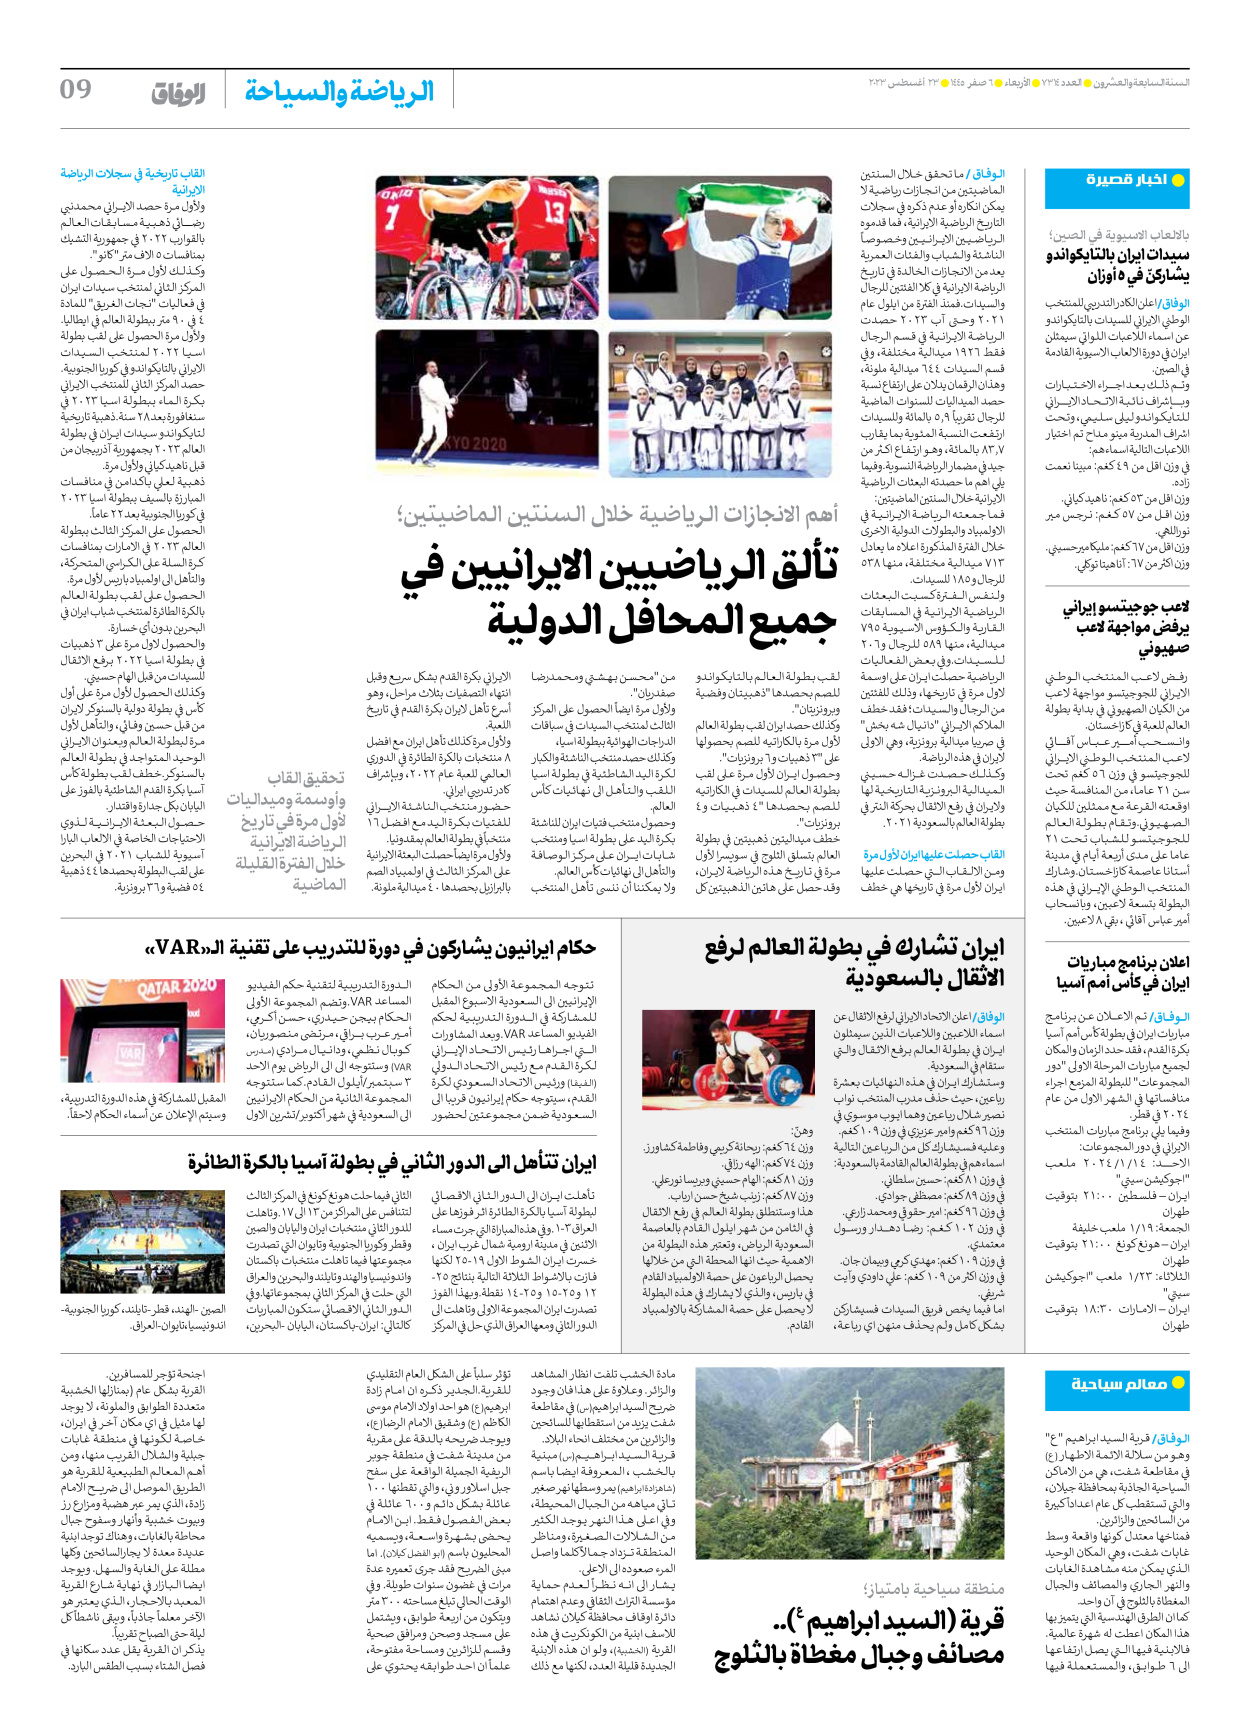 صحیفة ایران الدولیة الوفاق - العدد سبعة آلاف وثلاثمائة وأربعة عشر - ٢٣ أغسطس ٢٠٢٣ - الصفحة ۹